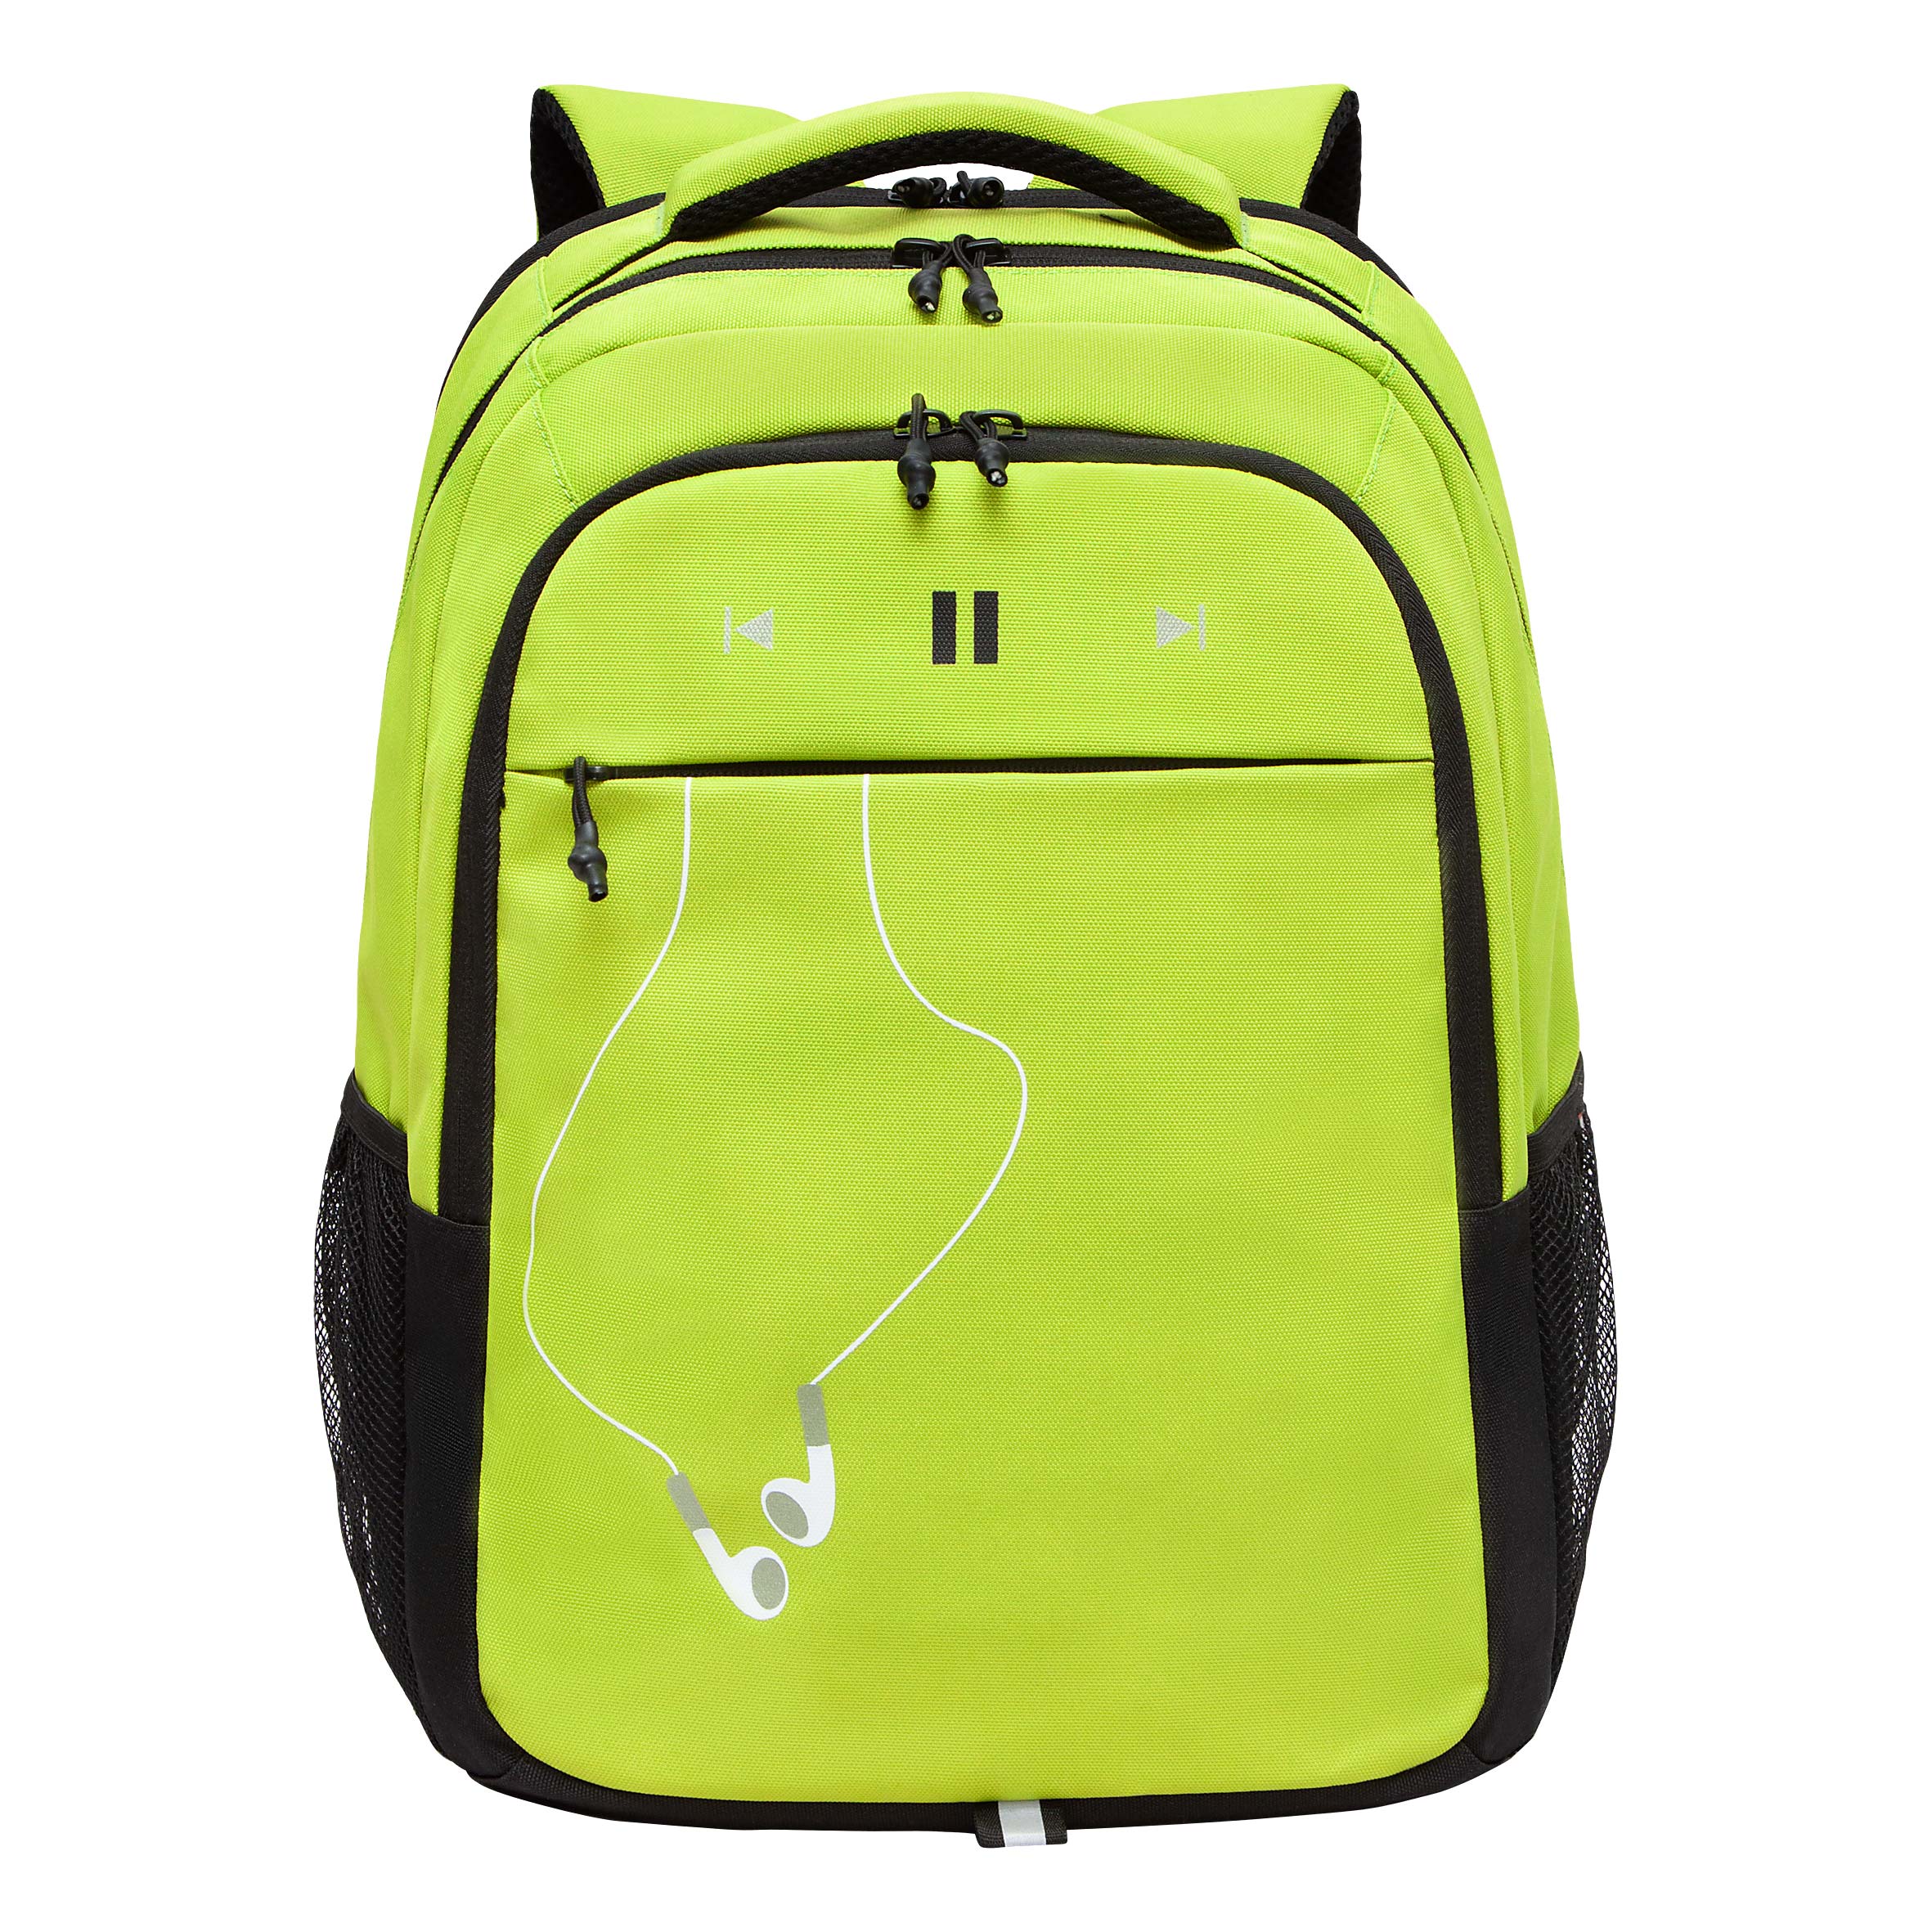 Рюкзак молодежный GRIZZLY с карманом для ноутбука 15, для мальчика, RU-432-4 4 рюкзак для ноутбука razer concourse pro 17 3 rc81 02920101 0500